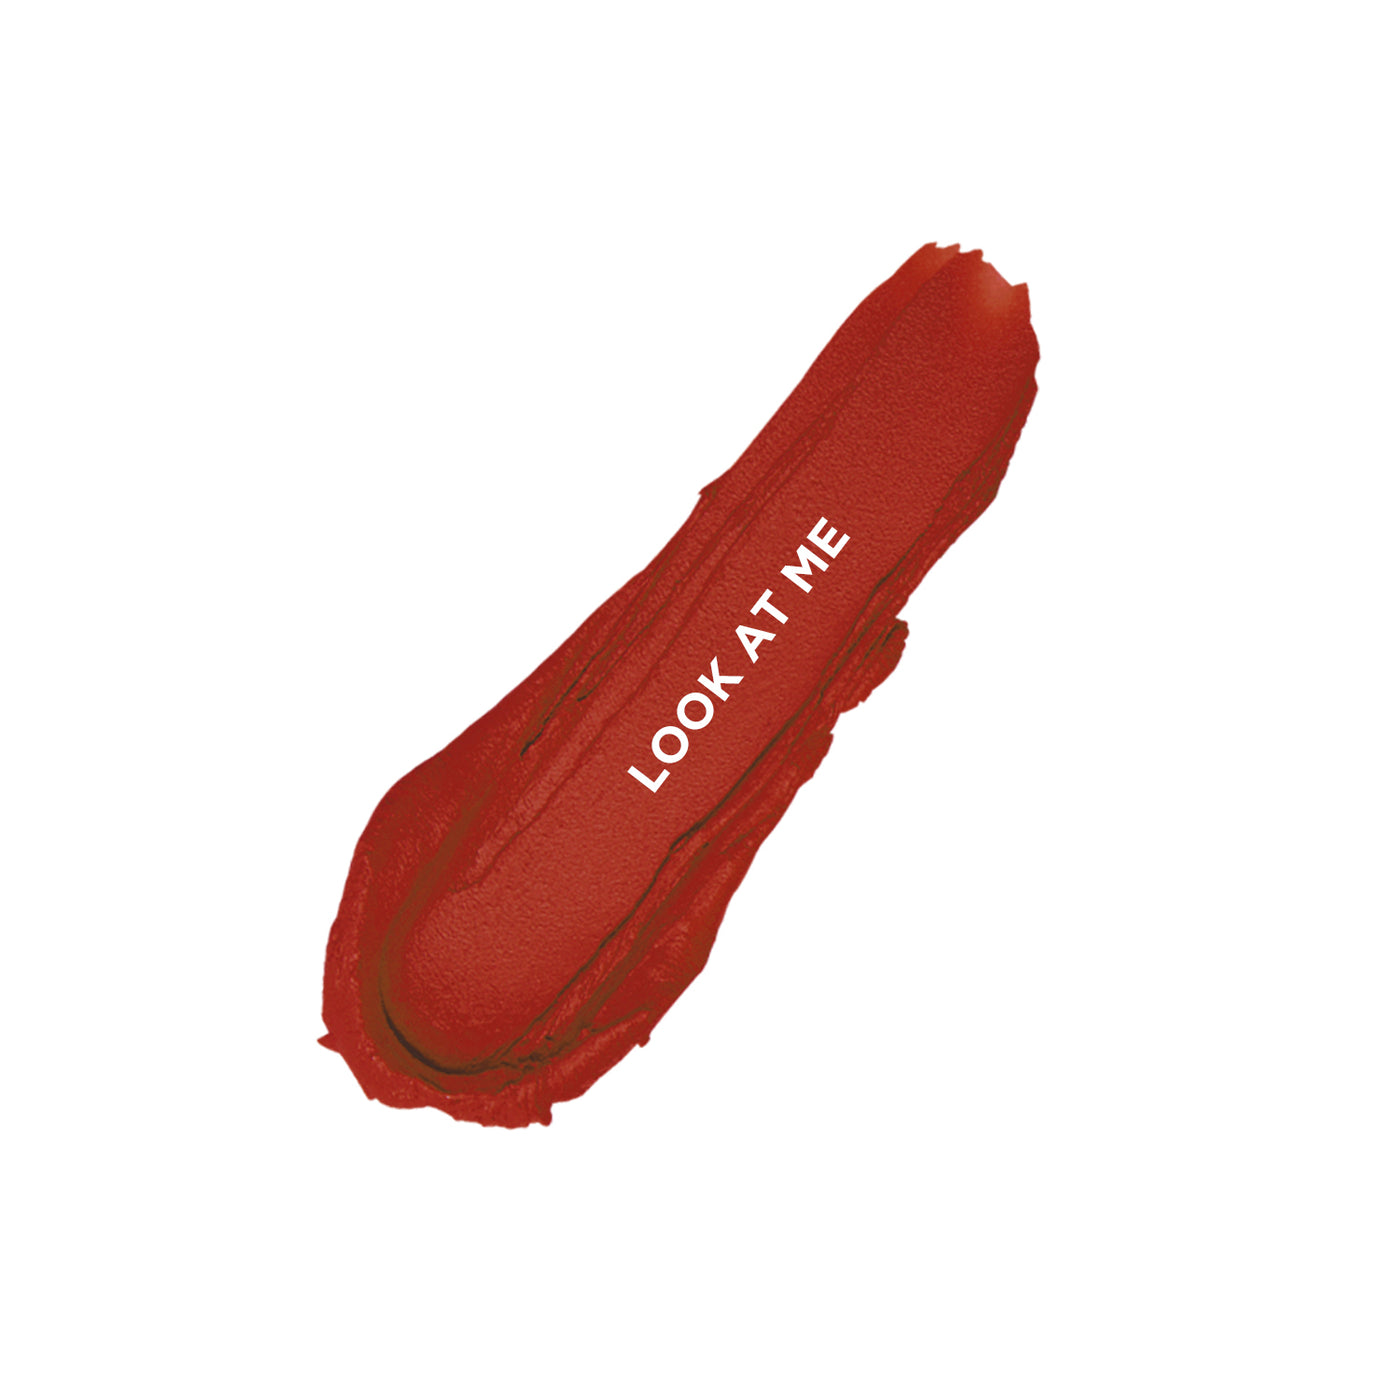 Revlon Super Lustrous™ Lipstick